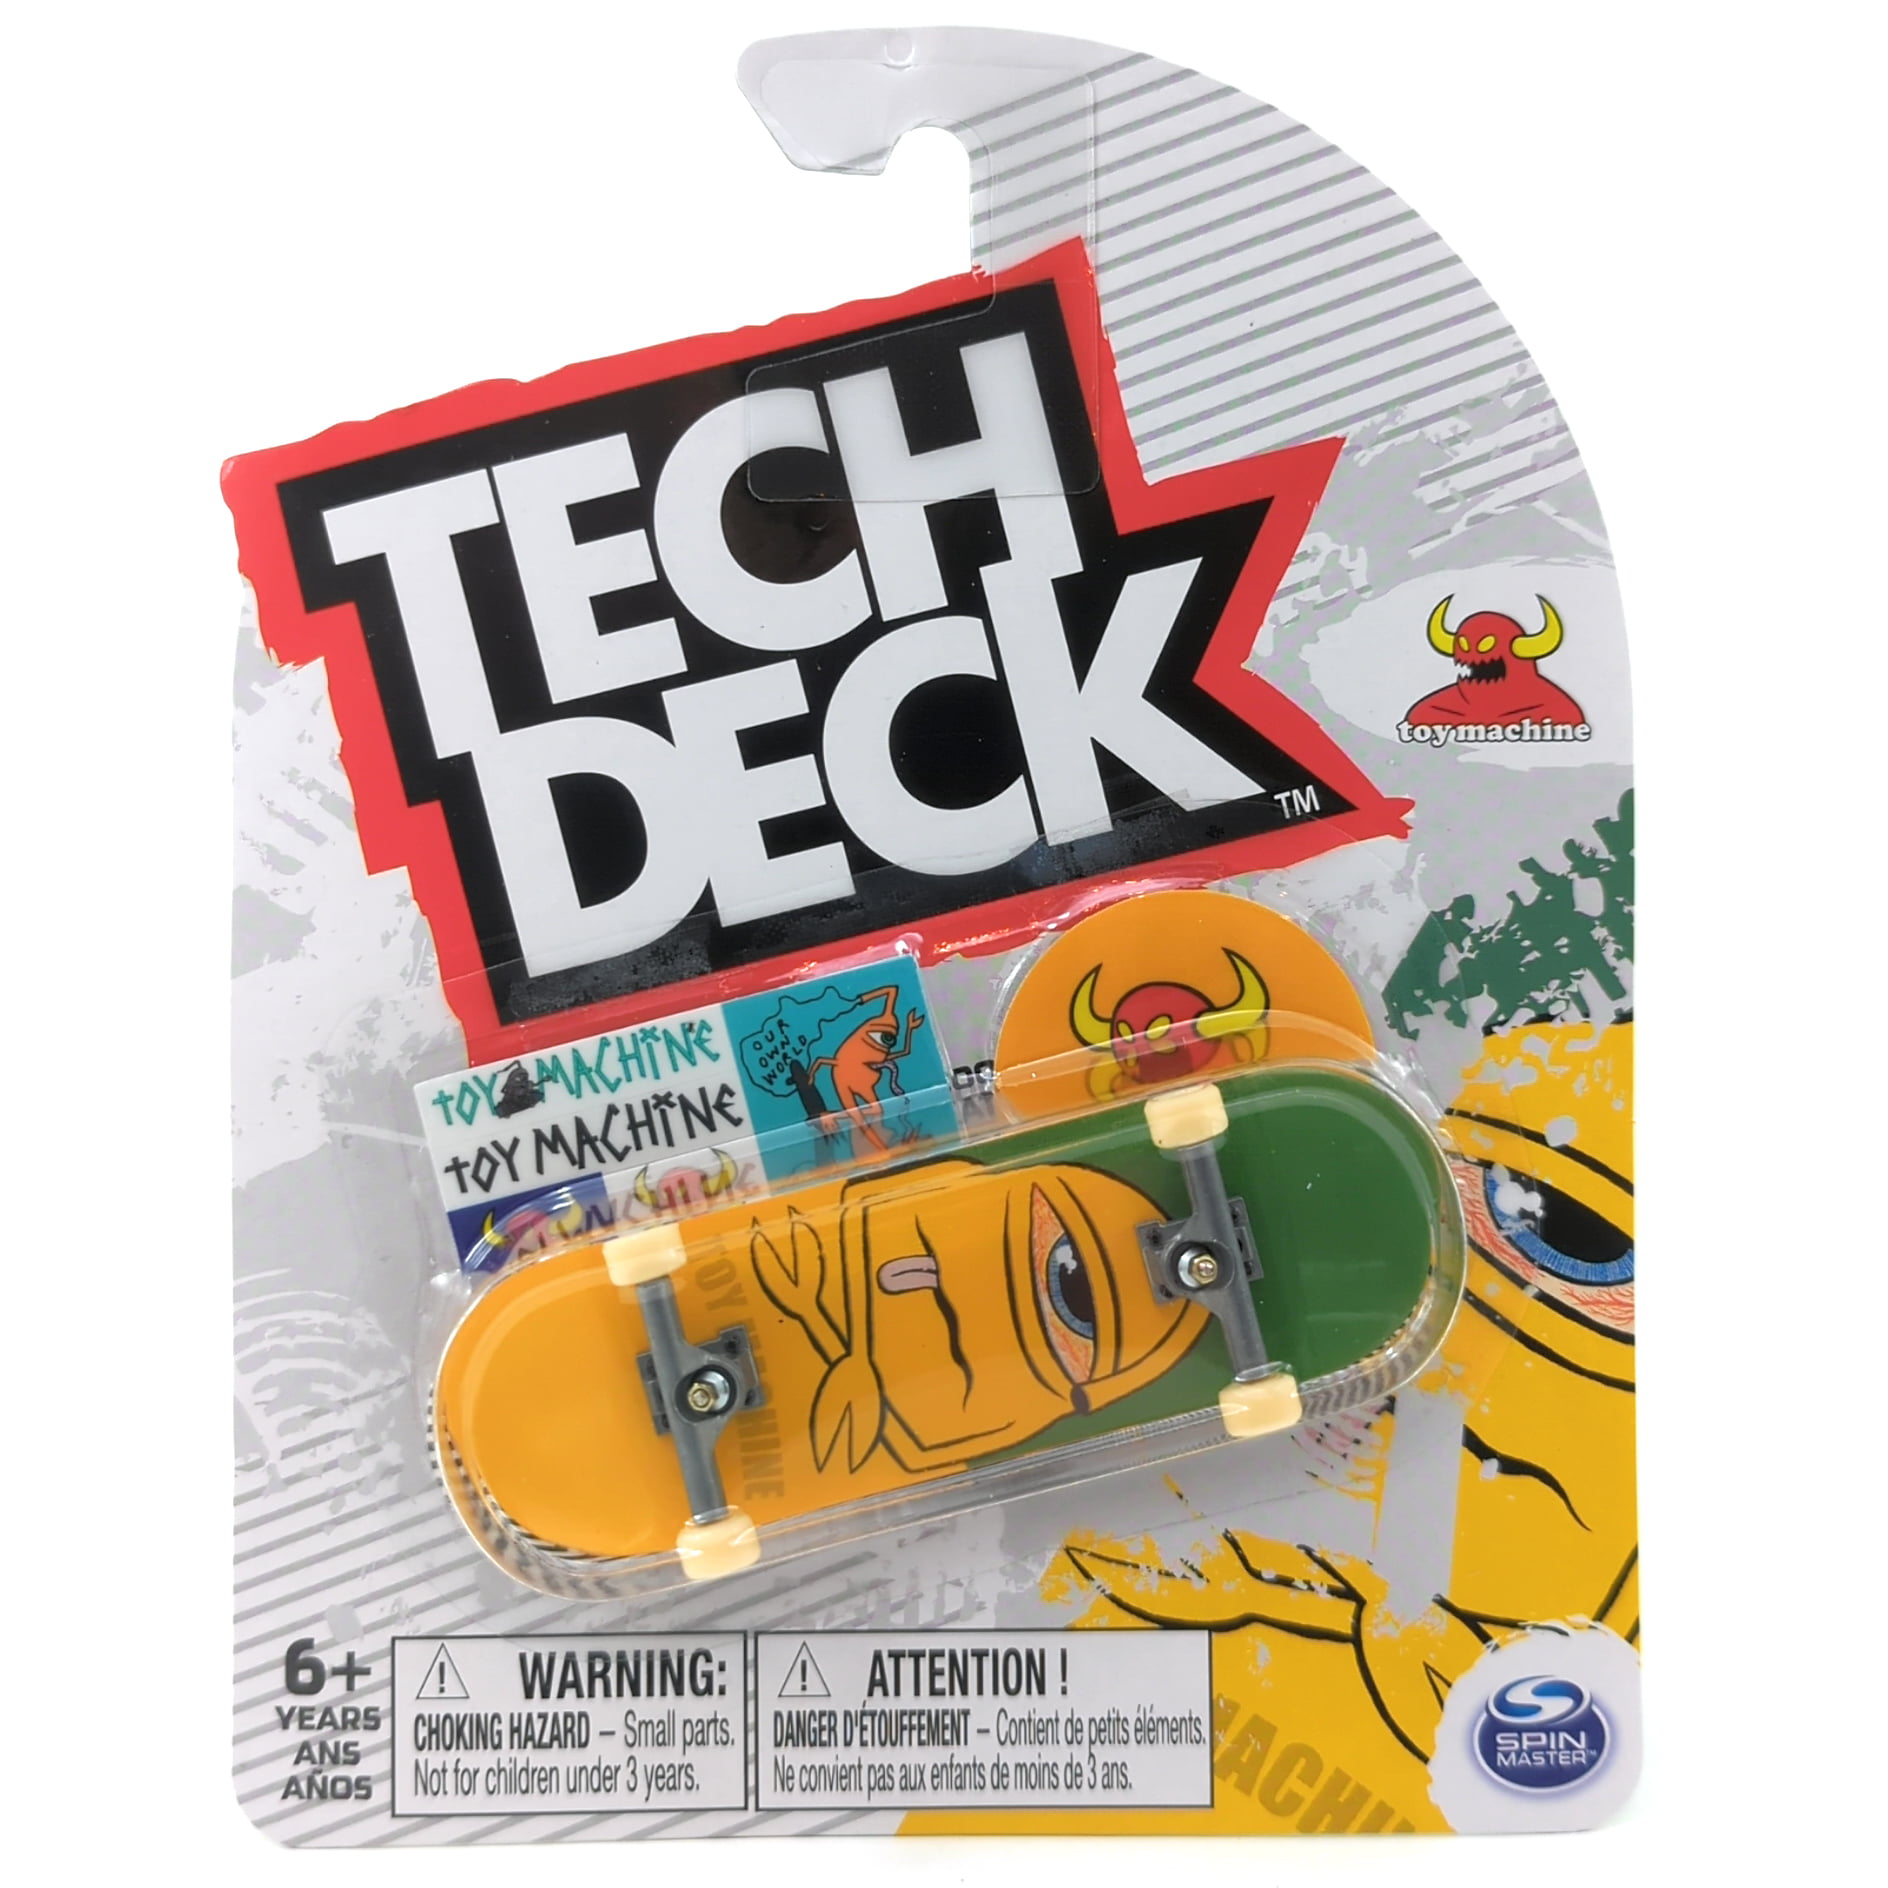 LOT of 2 Ultra Rare Series 11 Tech Deck Fingerboard DGK Skateboards